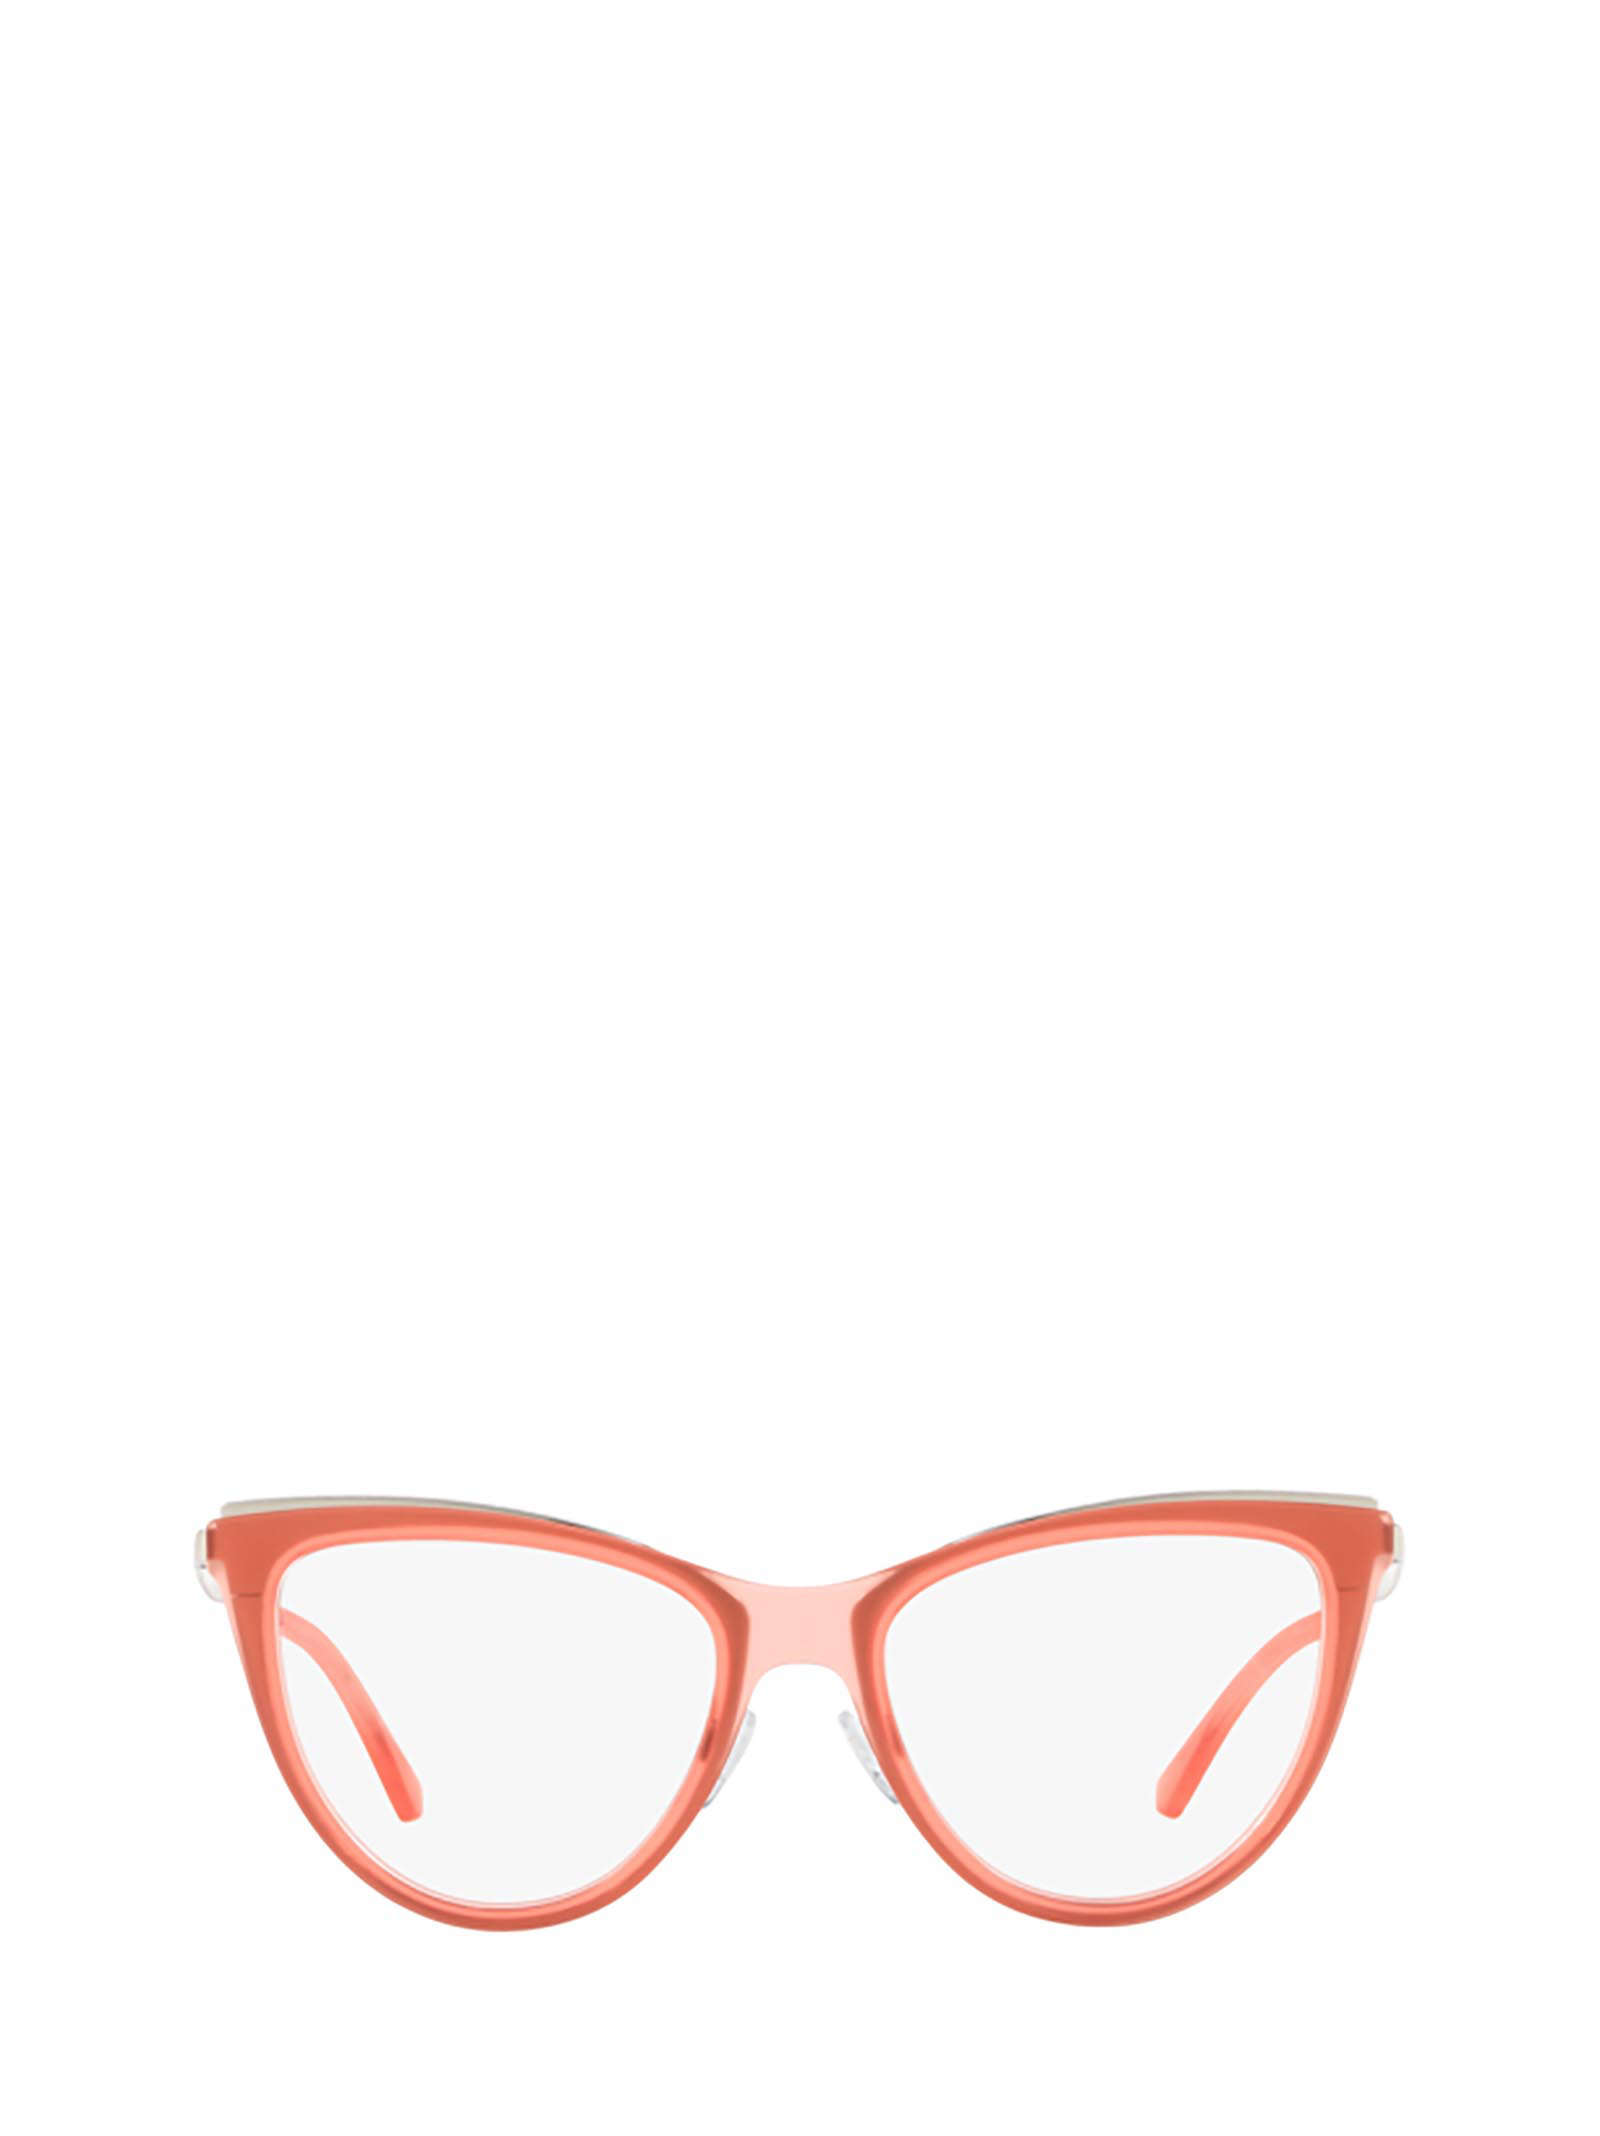 Emporio Armani Emporio Armani Ea1074 Matte Transparent Coral Glasses